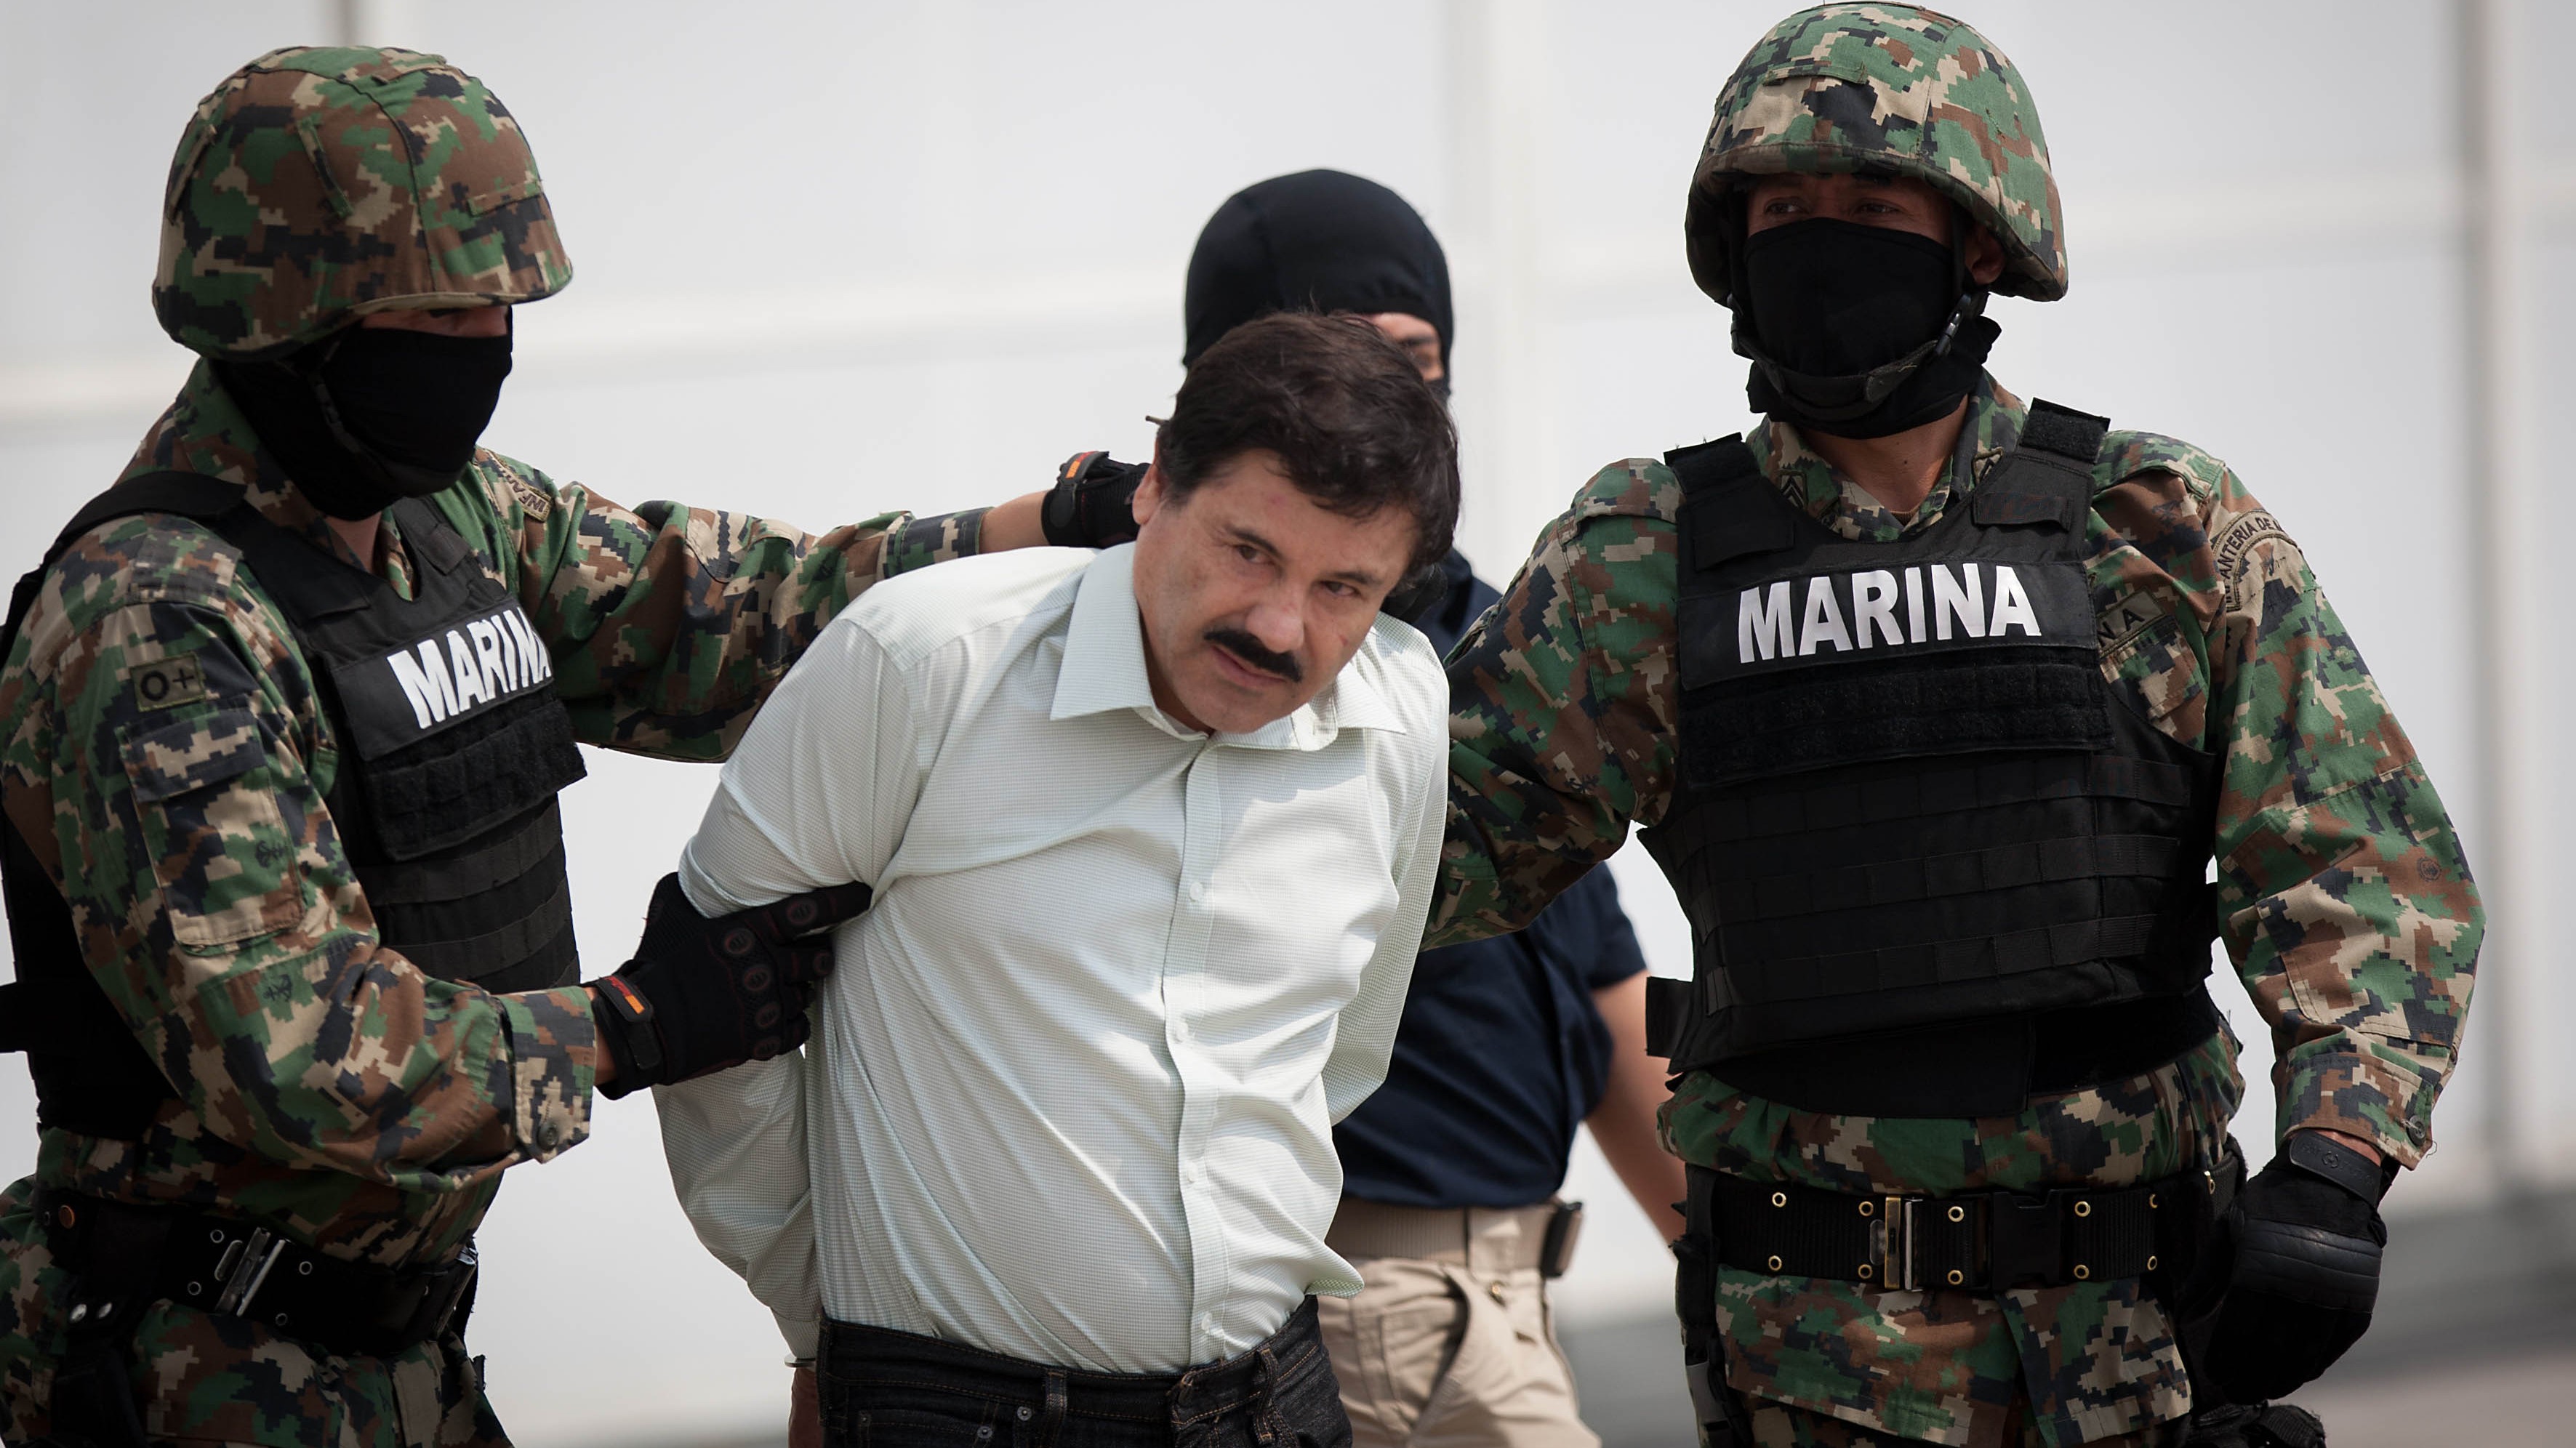 México agudiza caza de capo narcotraficante "El Chapo", herido en su huida